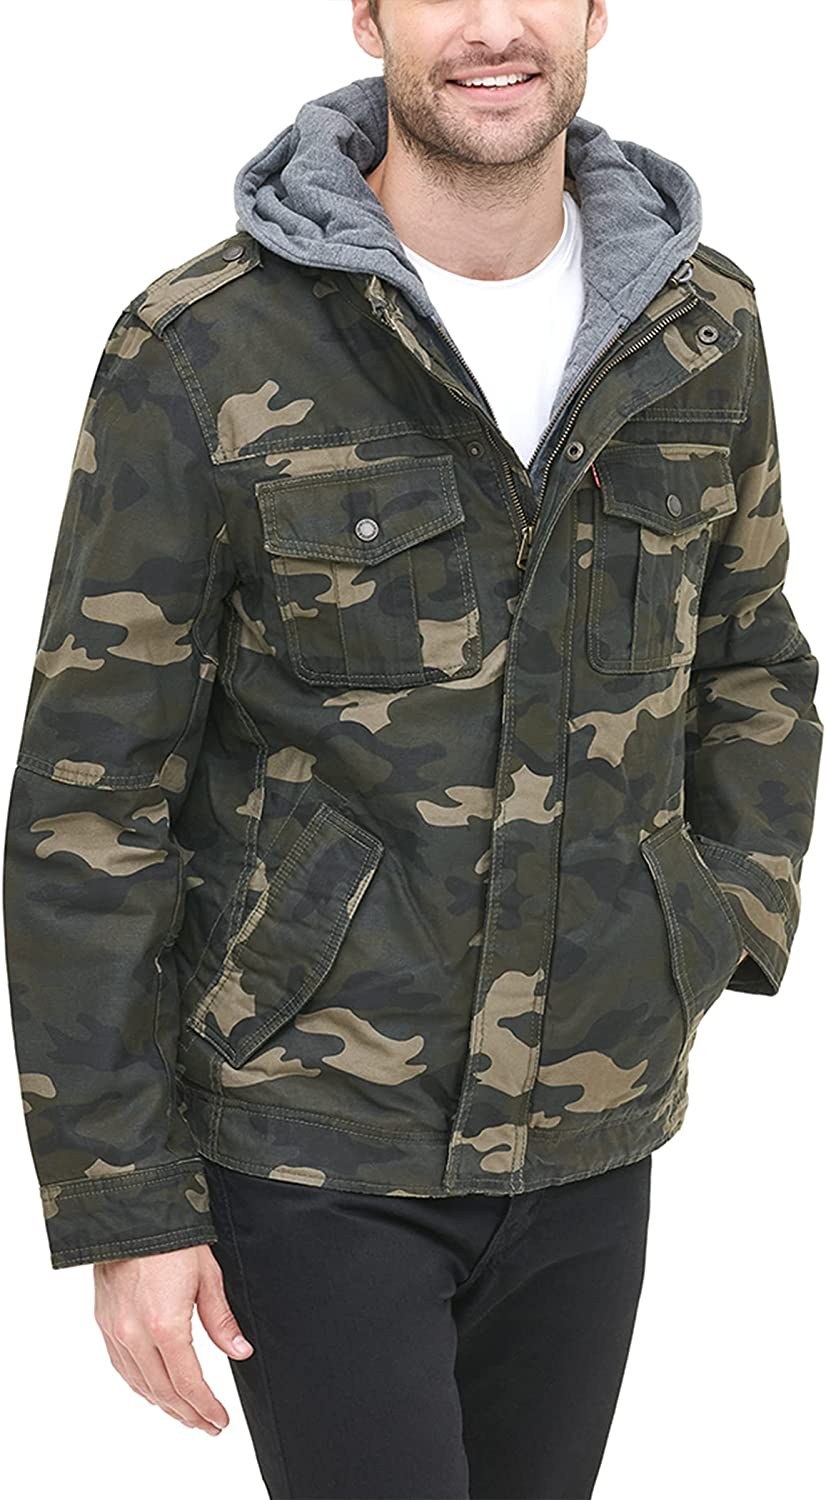 خرید و قیمت ژاکت مردانه Levi's مدل LM8RC364 ا Levi's Men's Washed Cotton  Hooded Military Jacket Standard Medium Camouflage | ترب